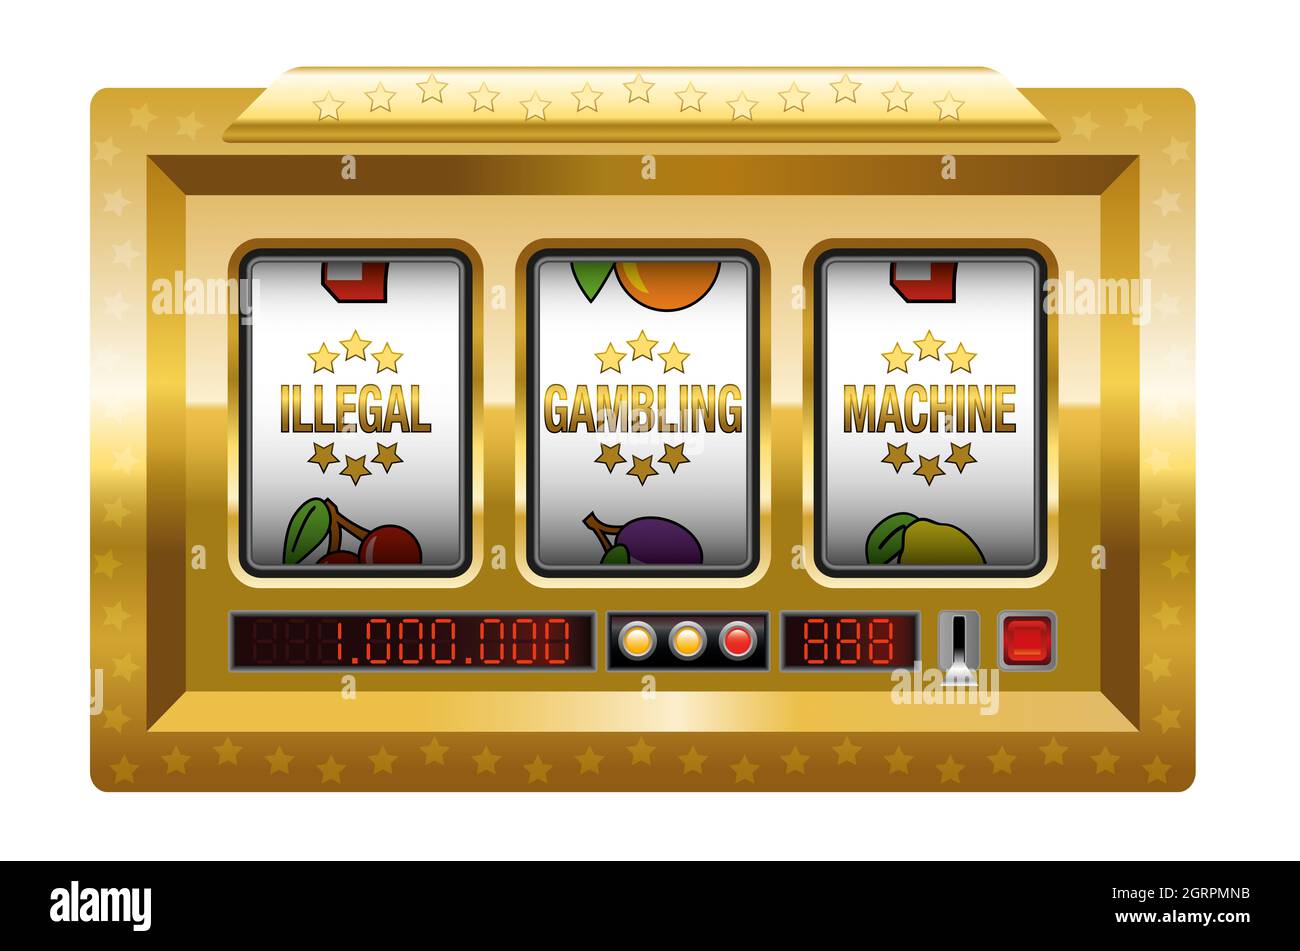 Macchine per il gioco d'azzardo illegale - slot machine dorata con tre rulli che letterano LA MACCHINA PER IL GIOCO D'AZZARDO ILLEGALE - illustrazione su sfondo bianco. Foto Stock